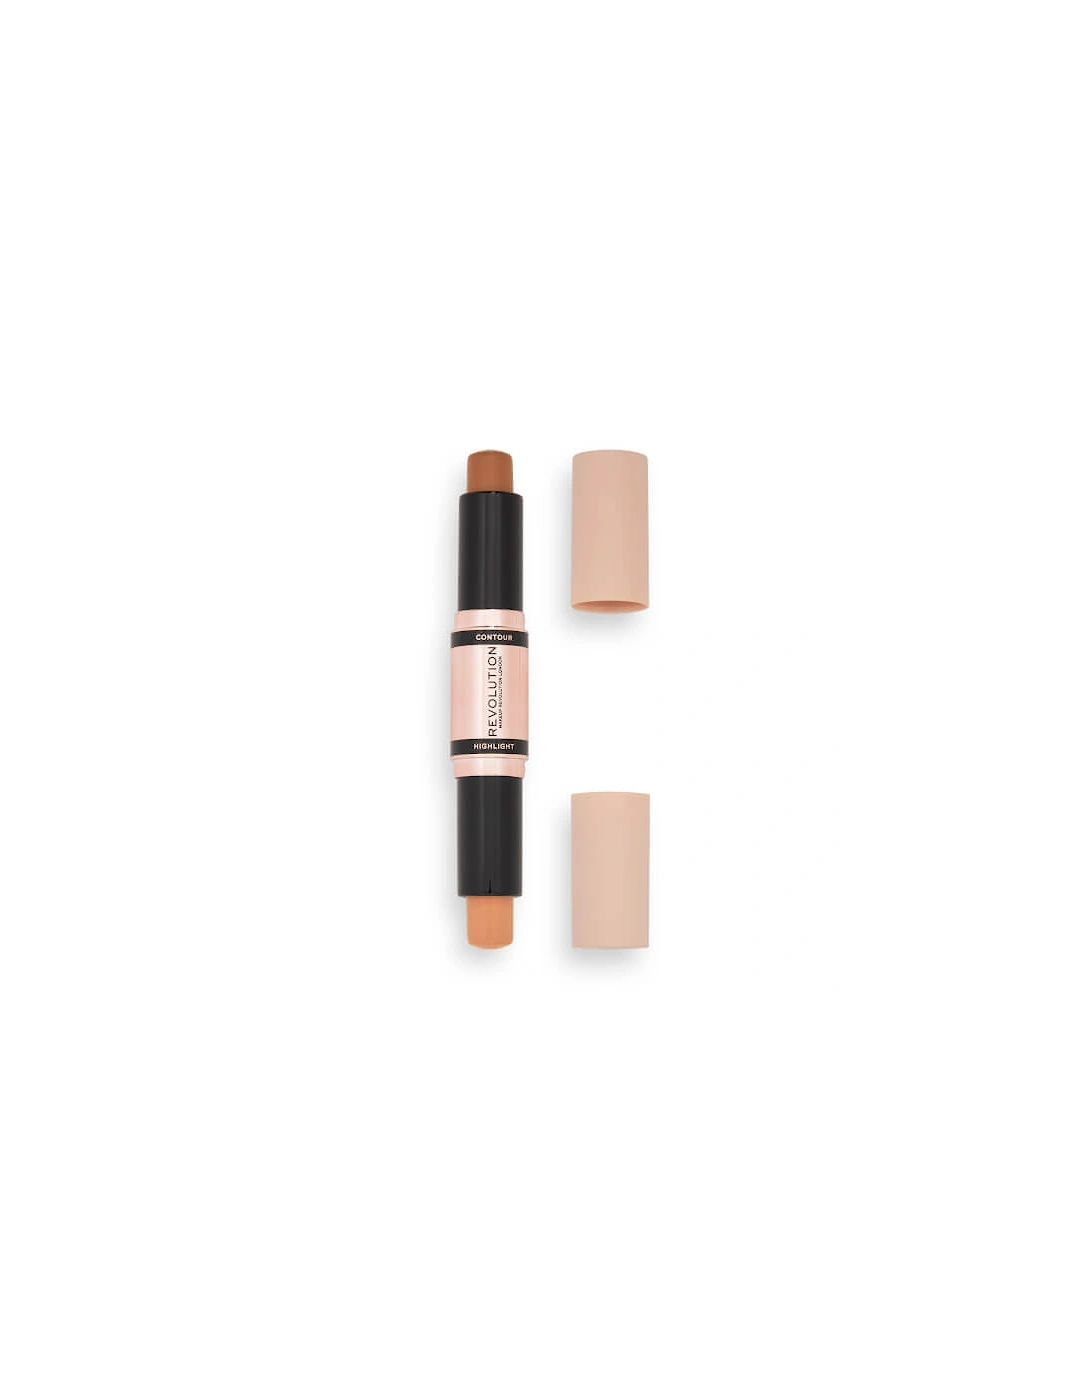 Makeup Makeup Fast Base Contour Stick - Dark 2.4g, 2 of 1